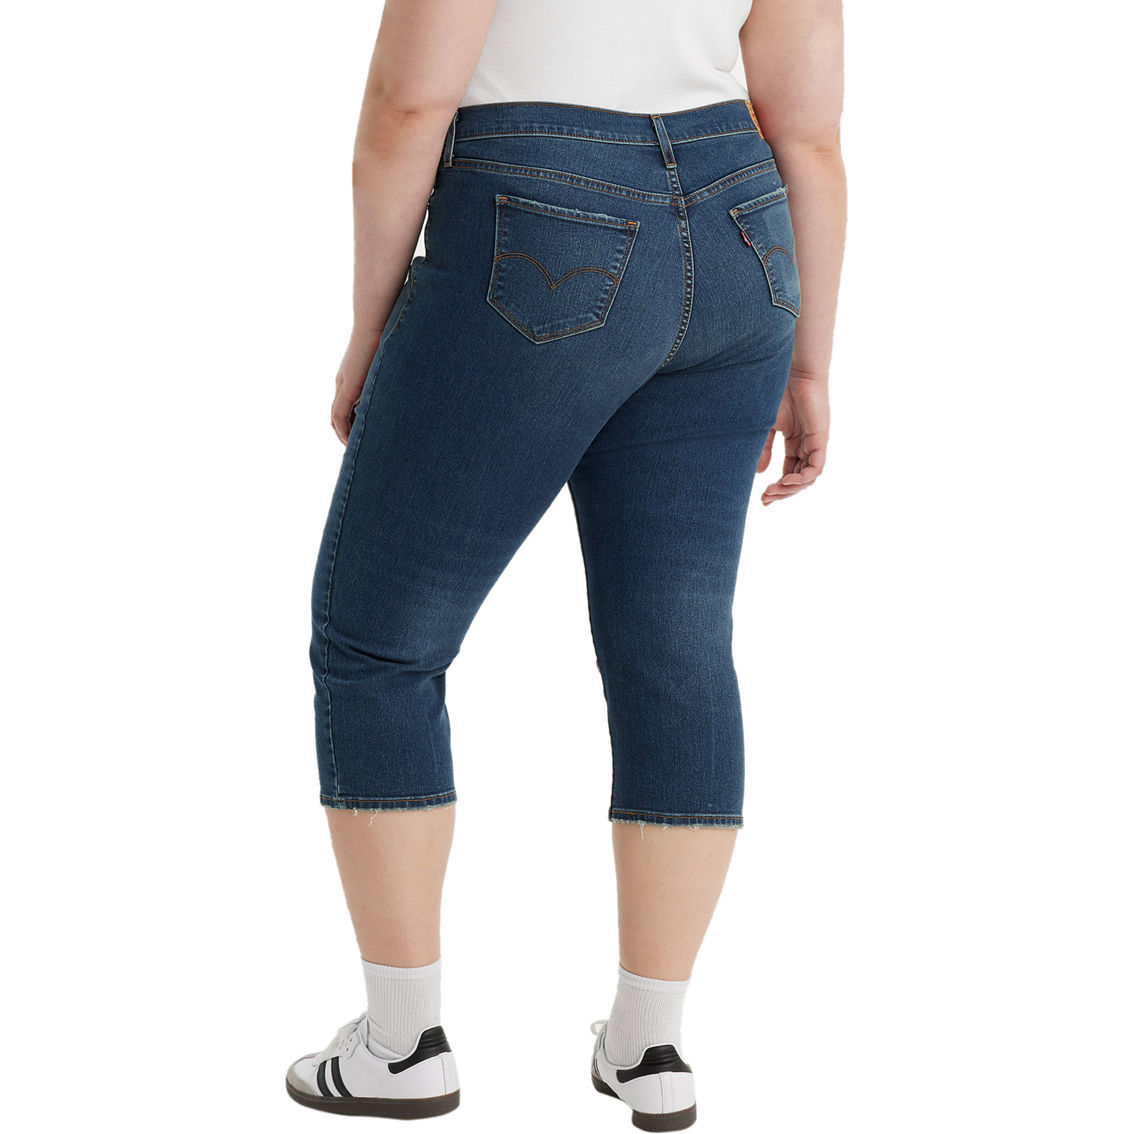 Levi’s Plus Size 311 Shaping Skinny Capri Jeans - Image 2 of 3